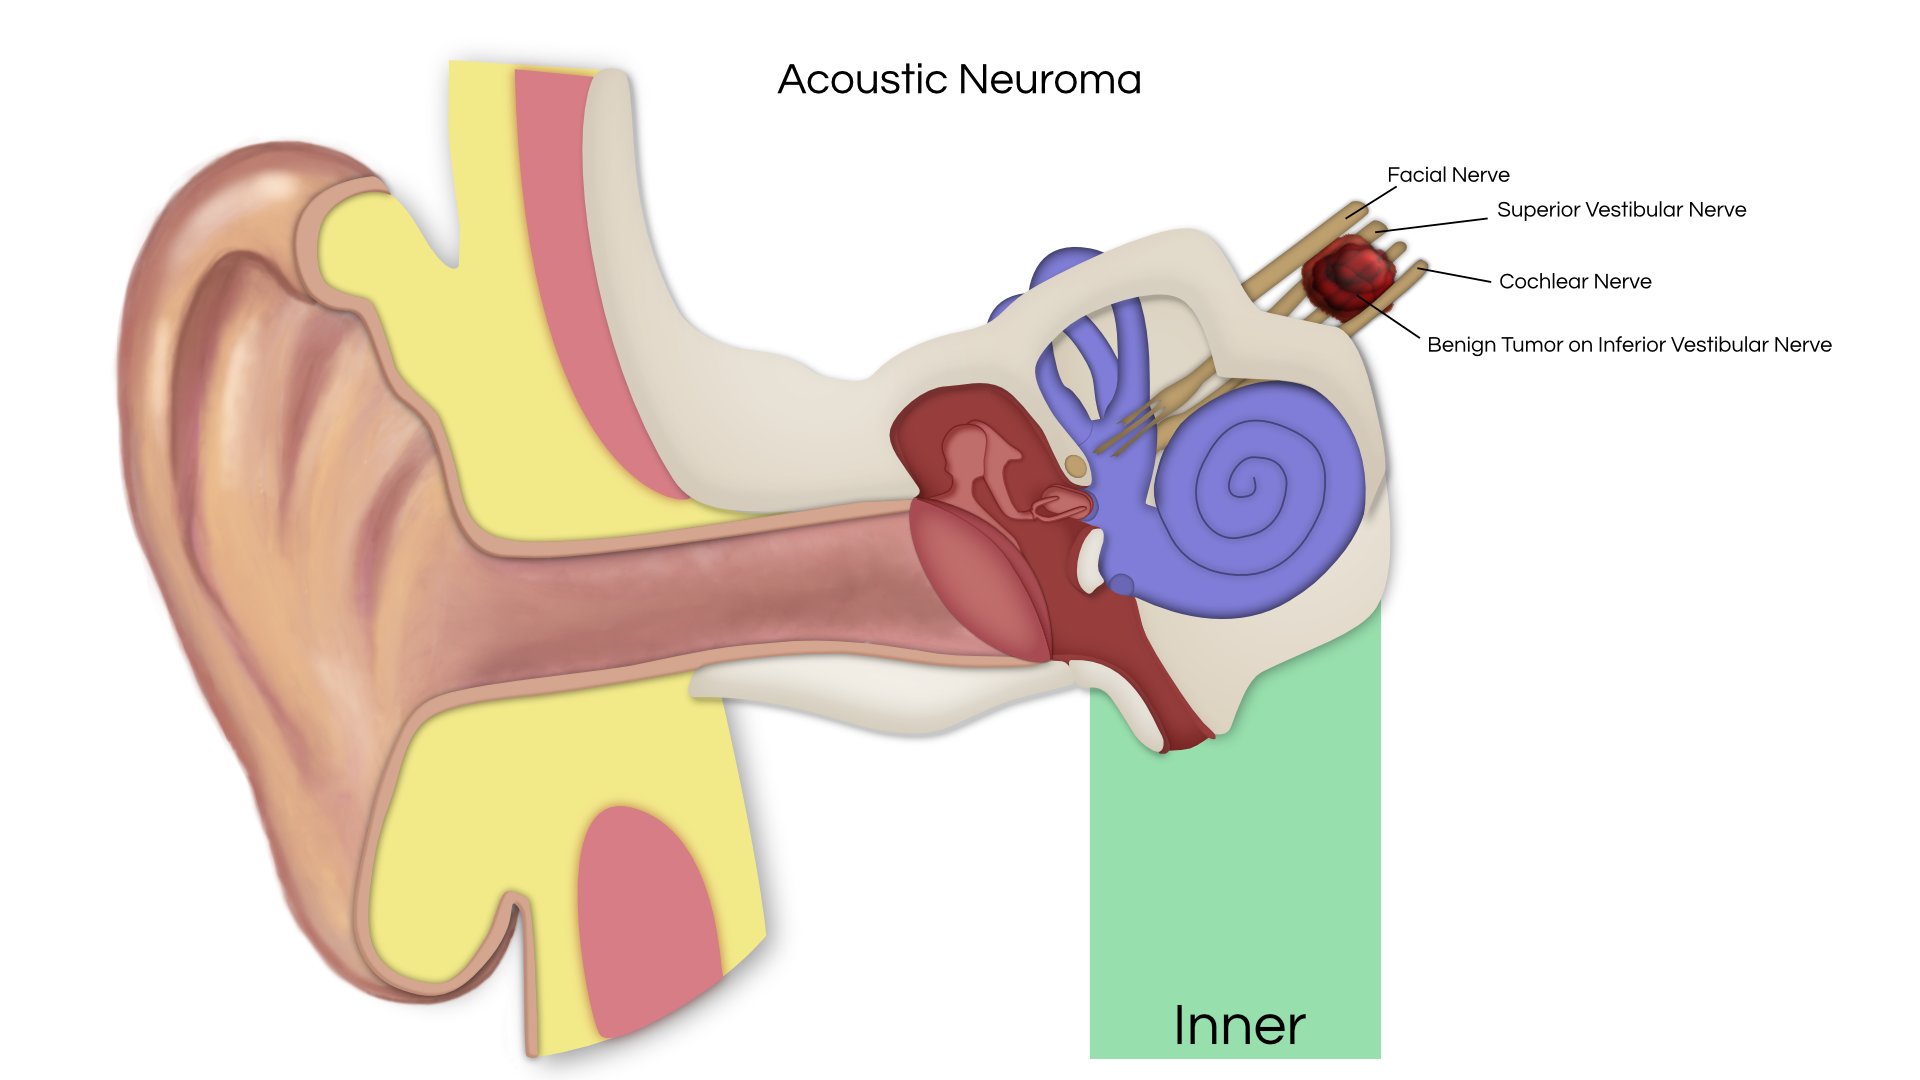 Невринома слухового нерва